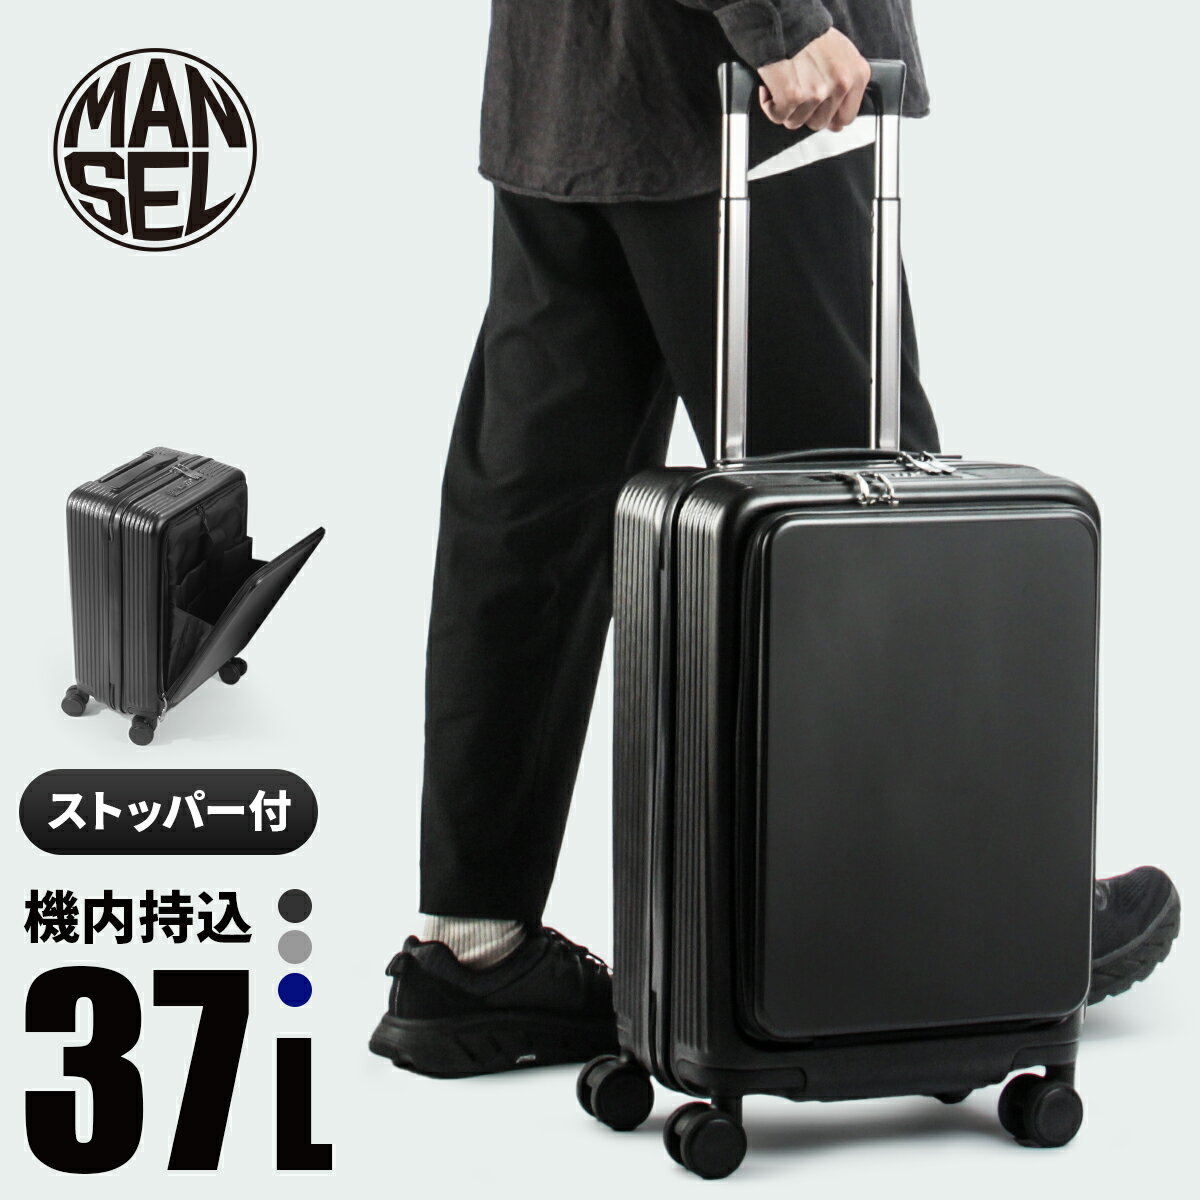 【最大26倍】マンセル スーツケース 機内持ち込み Sサイズ SS 37L フロントオープン ポケット ストッパー付き 軽量 前開き mansel 0010 おしゃれ ブランド キャリーケース キャリーバッグ